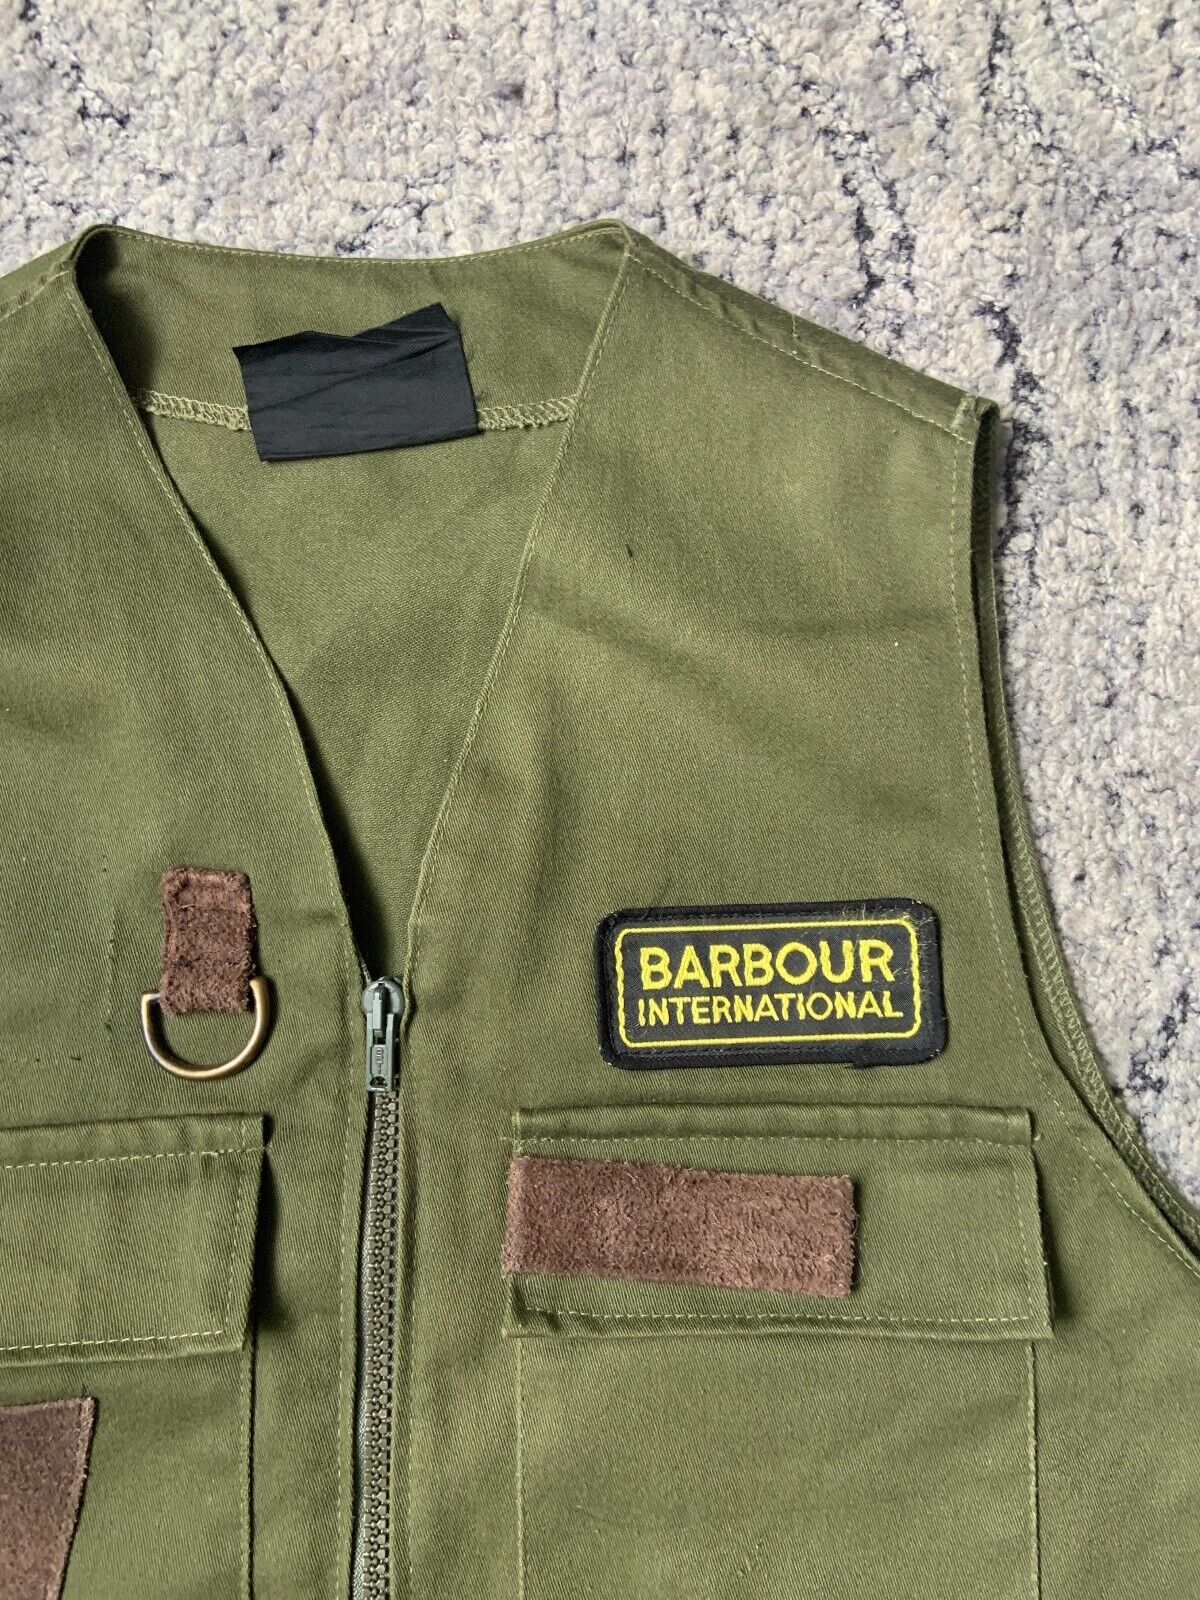 Barbour International Vintage Vest Size M Mens - image 5